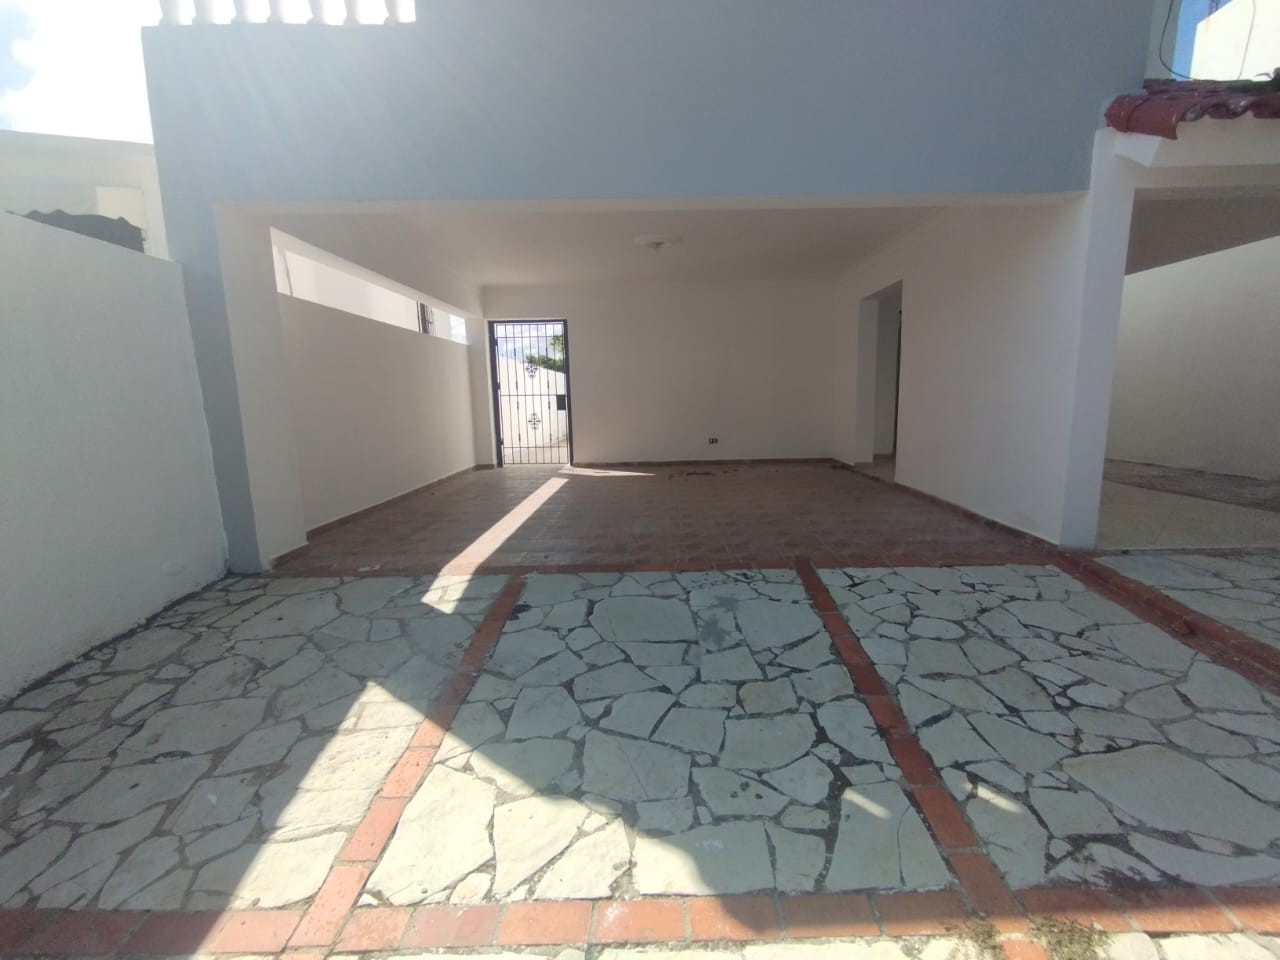 casas - Se Vende Casa en Los Rios Sector Colinas del Seminario.
200mst
RD$15,500.000 1